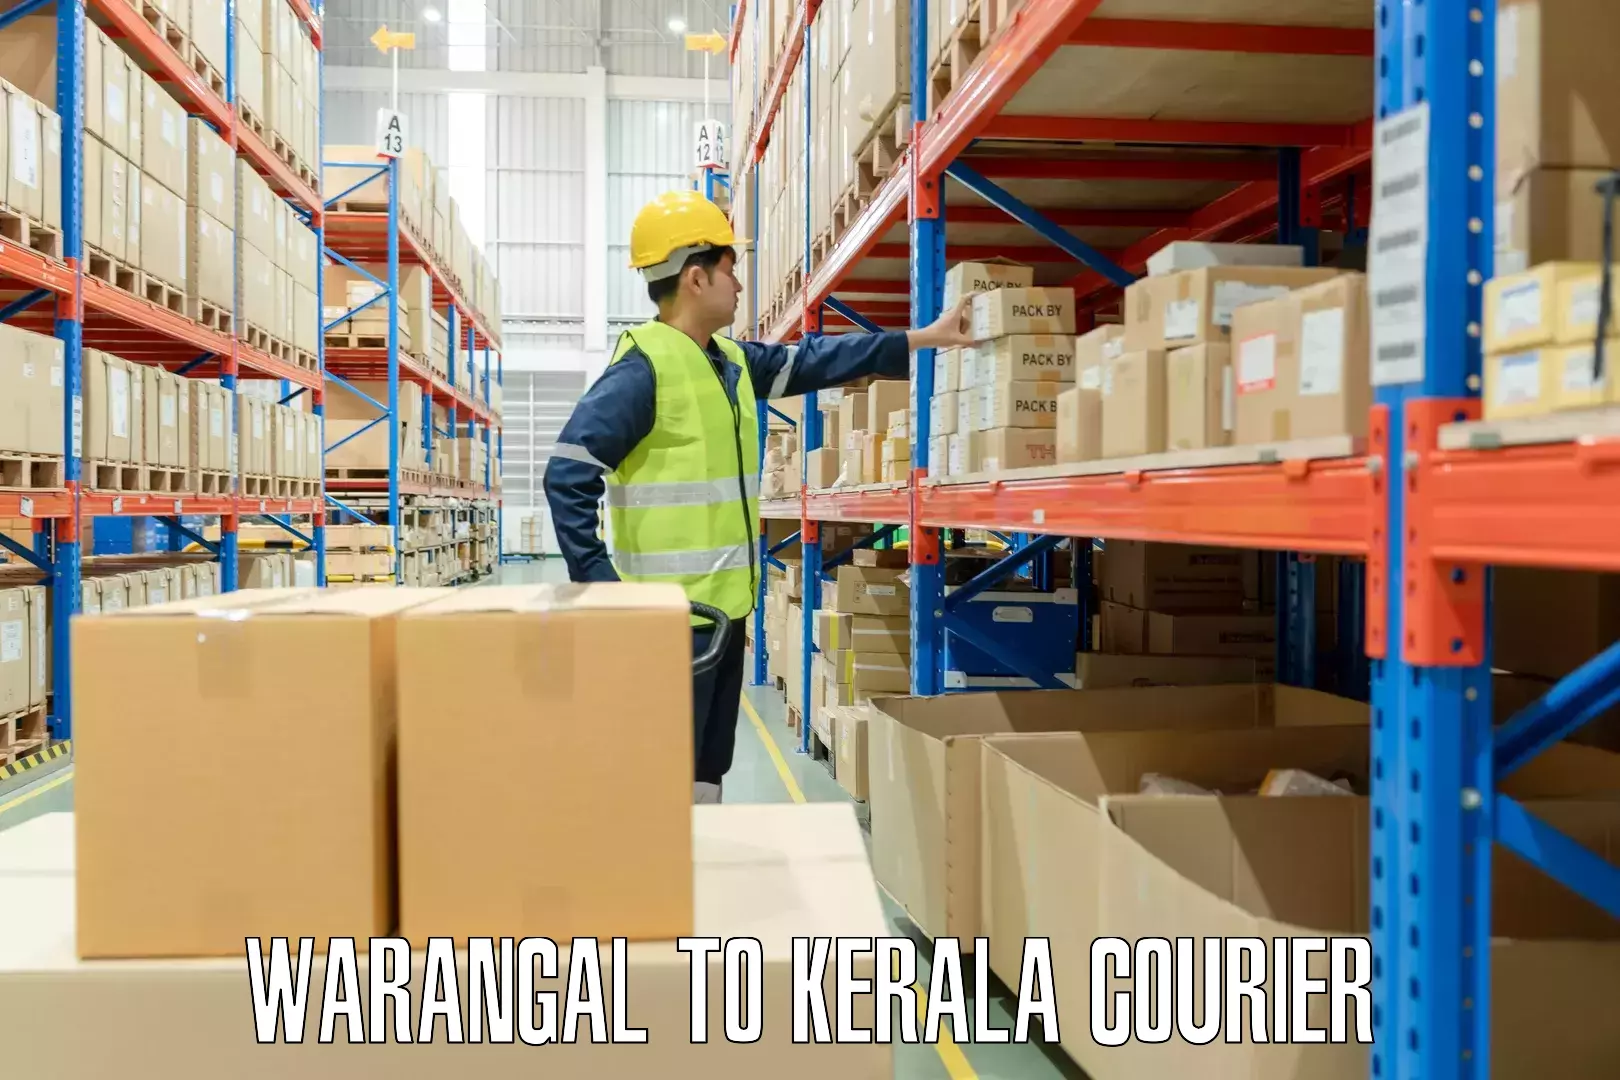 Baggage transport technology Warangal to Kerala